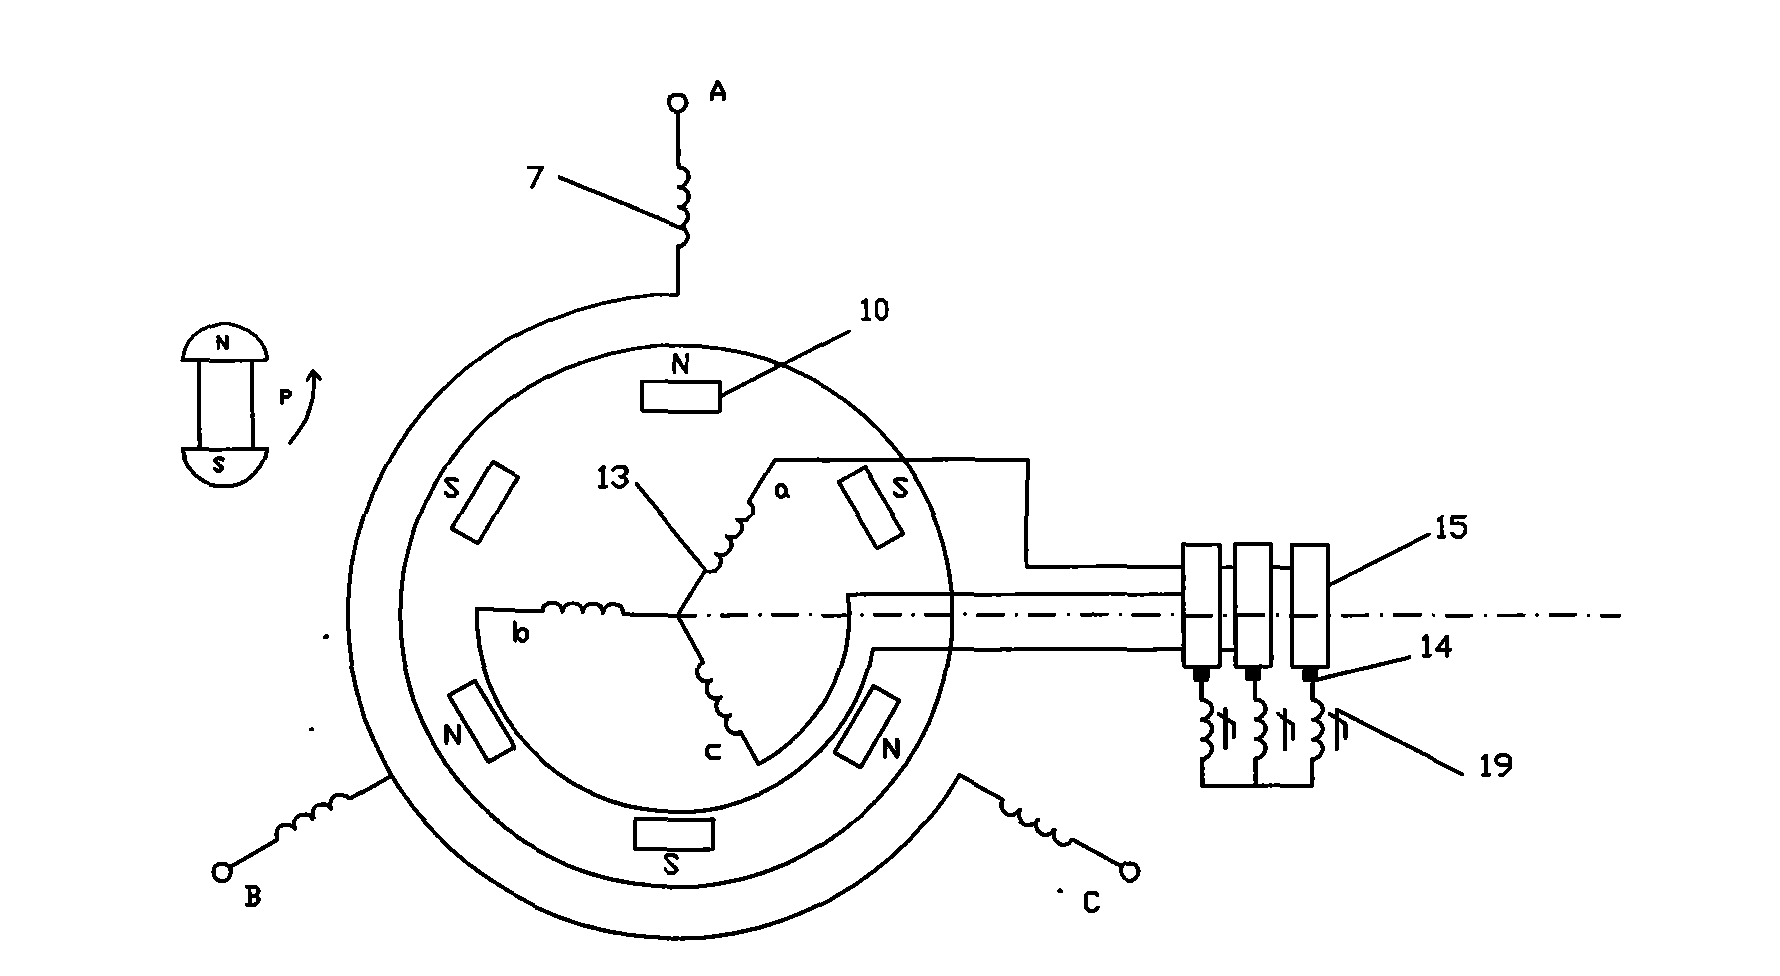 Wound rotor self-starting permasyn motor